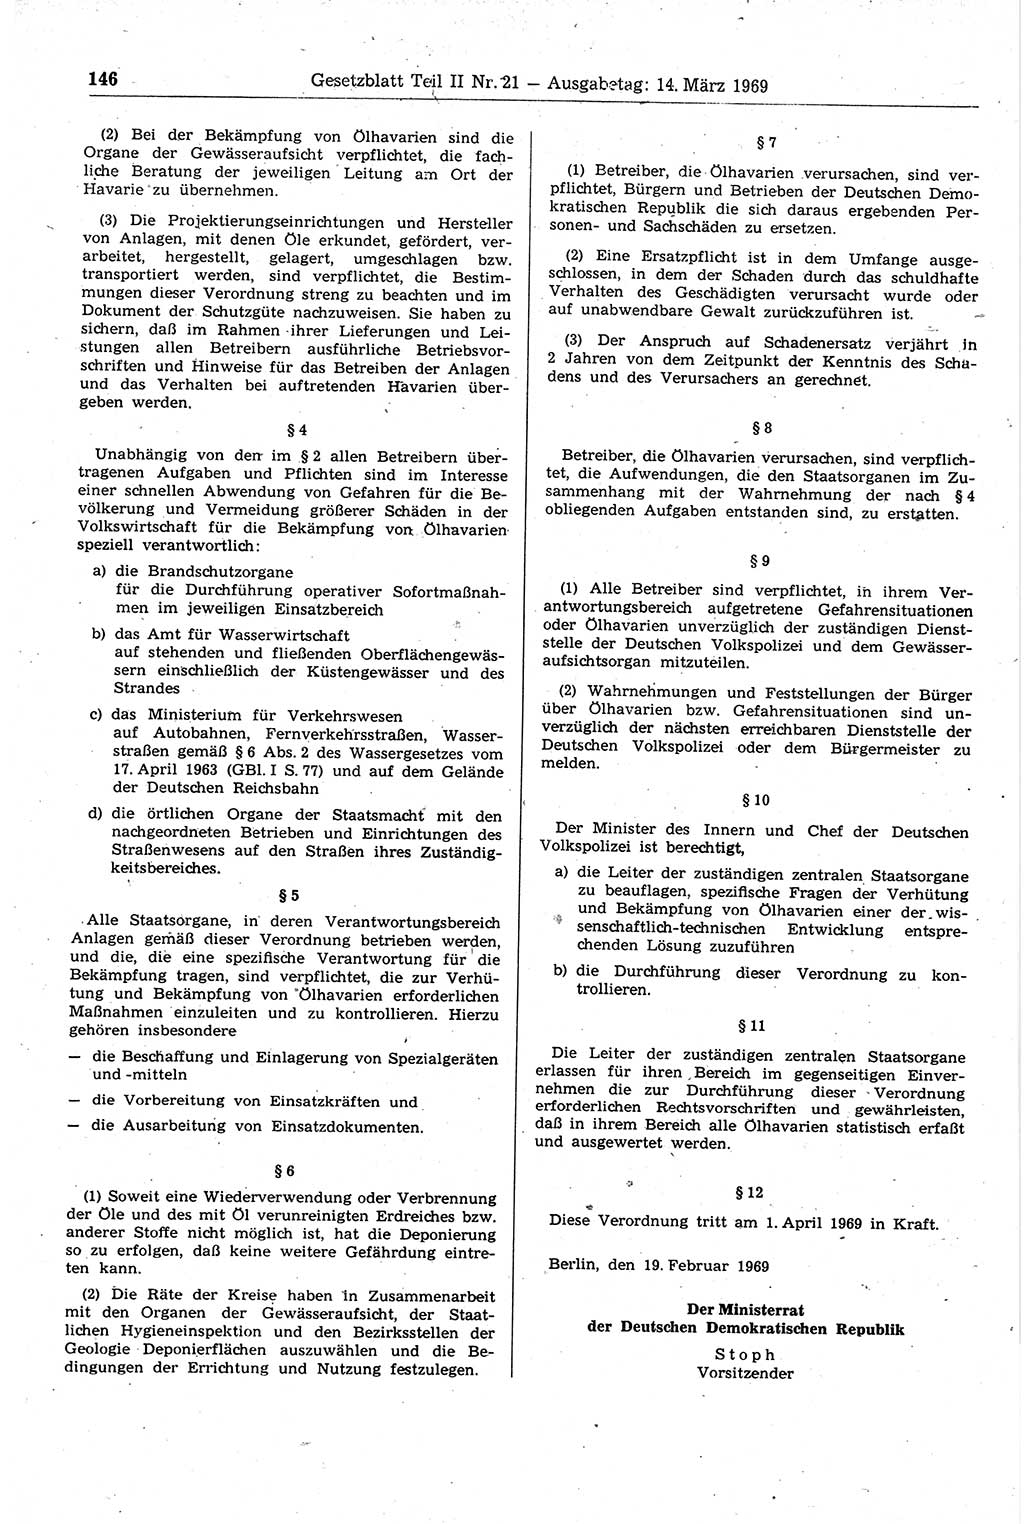 Gesetzblatt (GBl.) der Deutschen Demokratischen Republik (DDR) Teil ⅠⅠ 1969, Seite 146 (GBl. DDR ⅠⅠ 1969, S. 146)